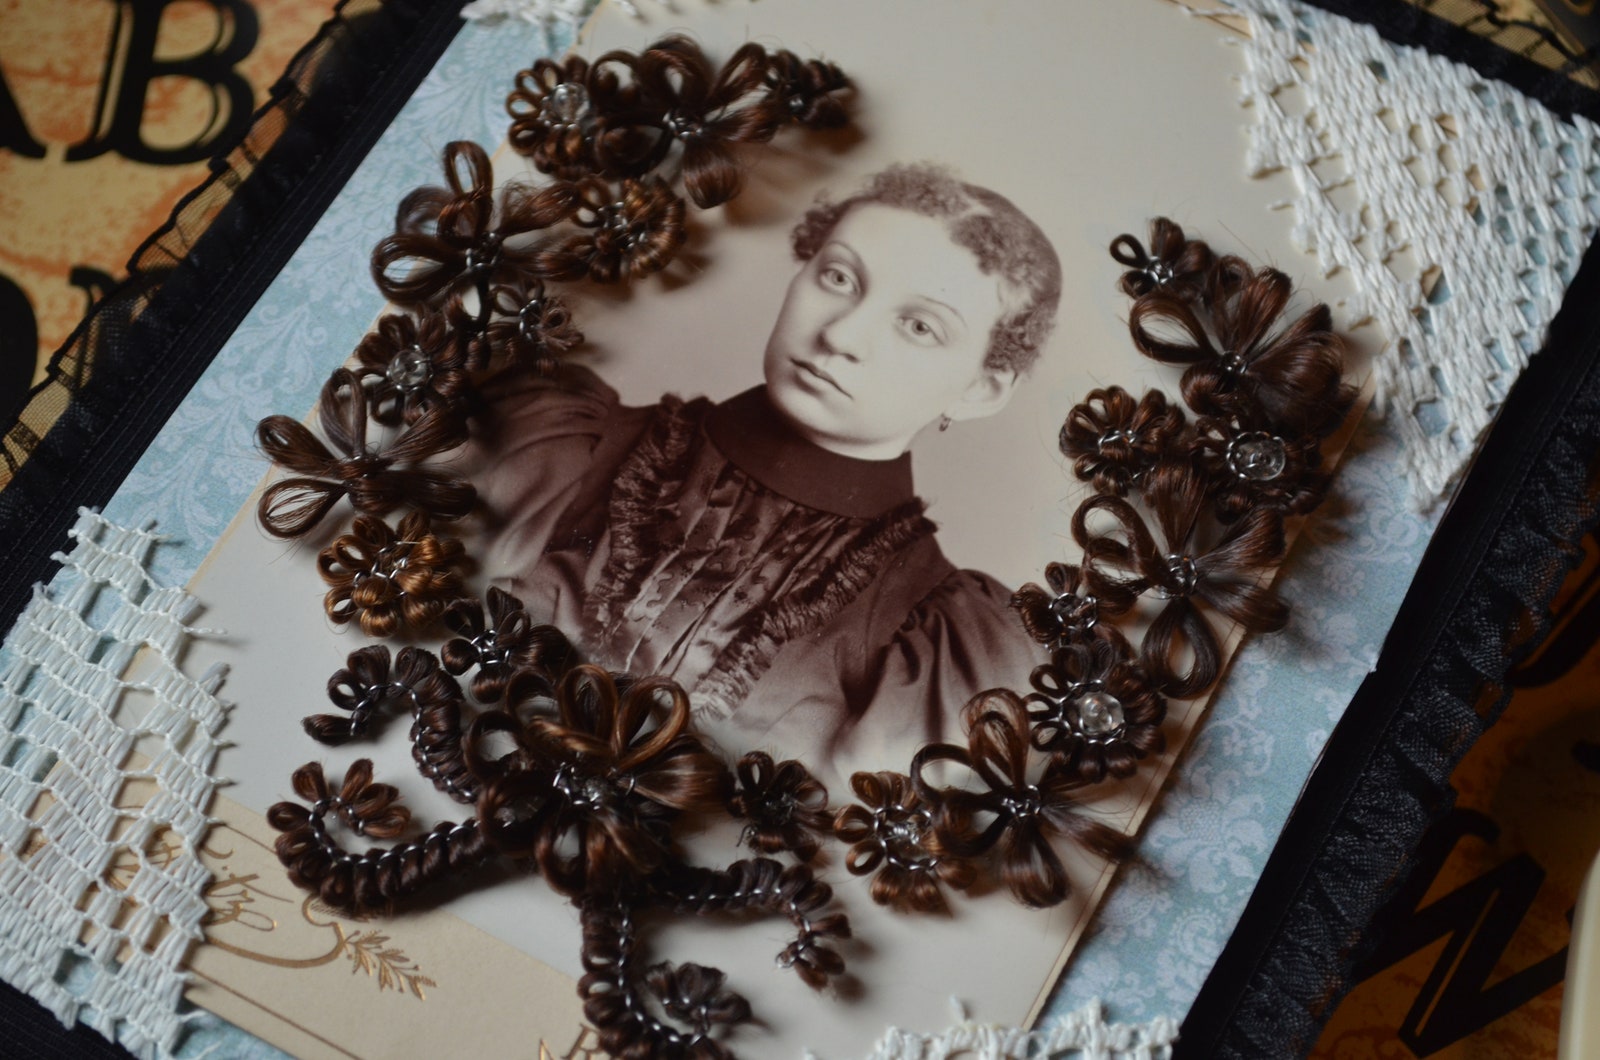 a hairwork wreath by hallie schneck layered on on a vintage portrait photo